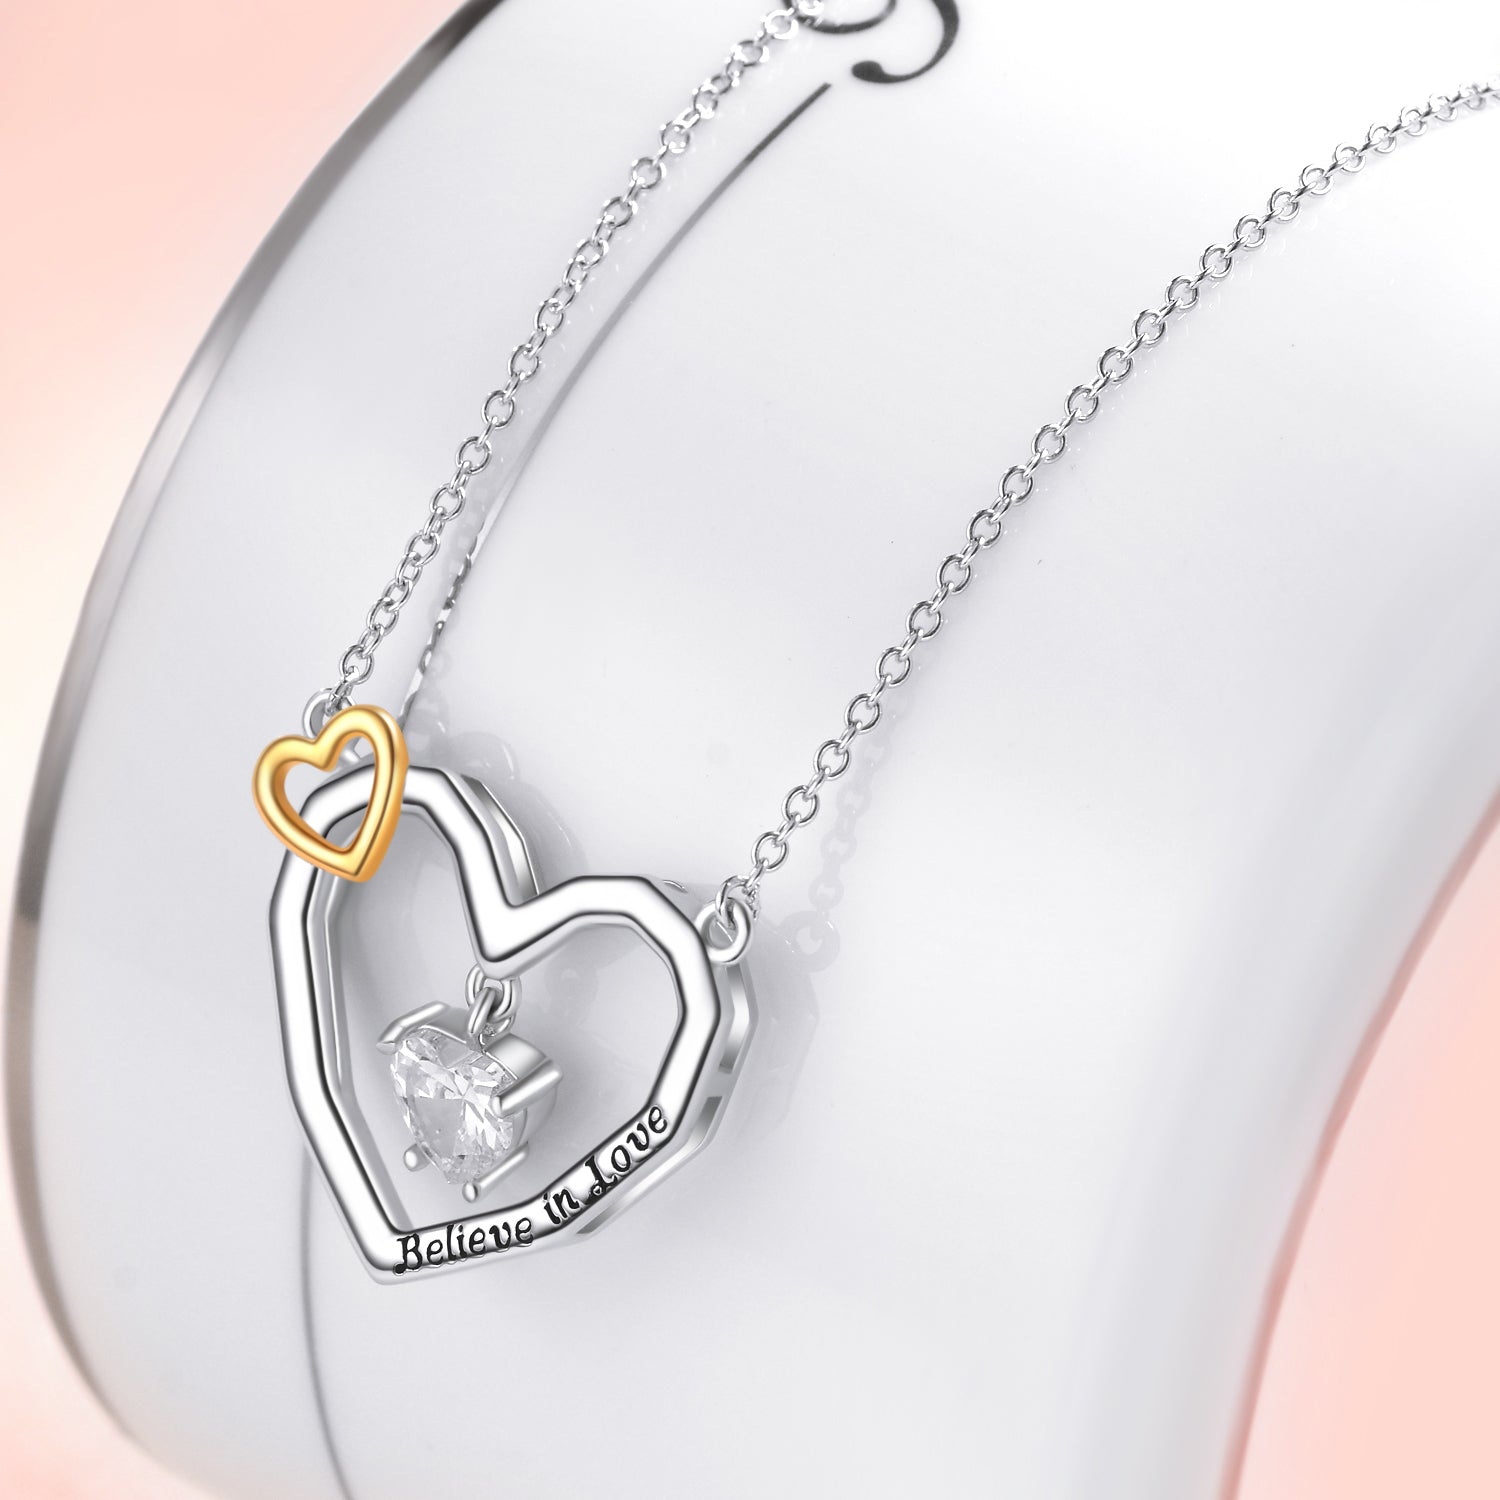 Double Heart Love Jewelry Believe in Love Engraved Heart Shape Necklace